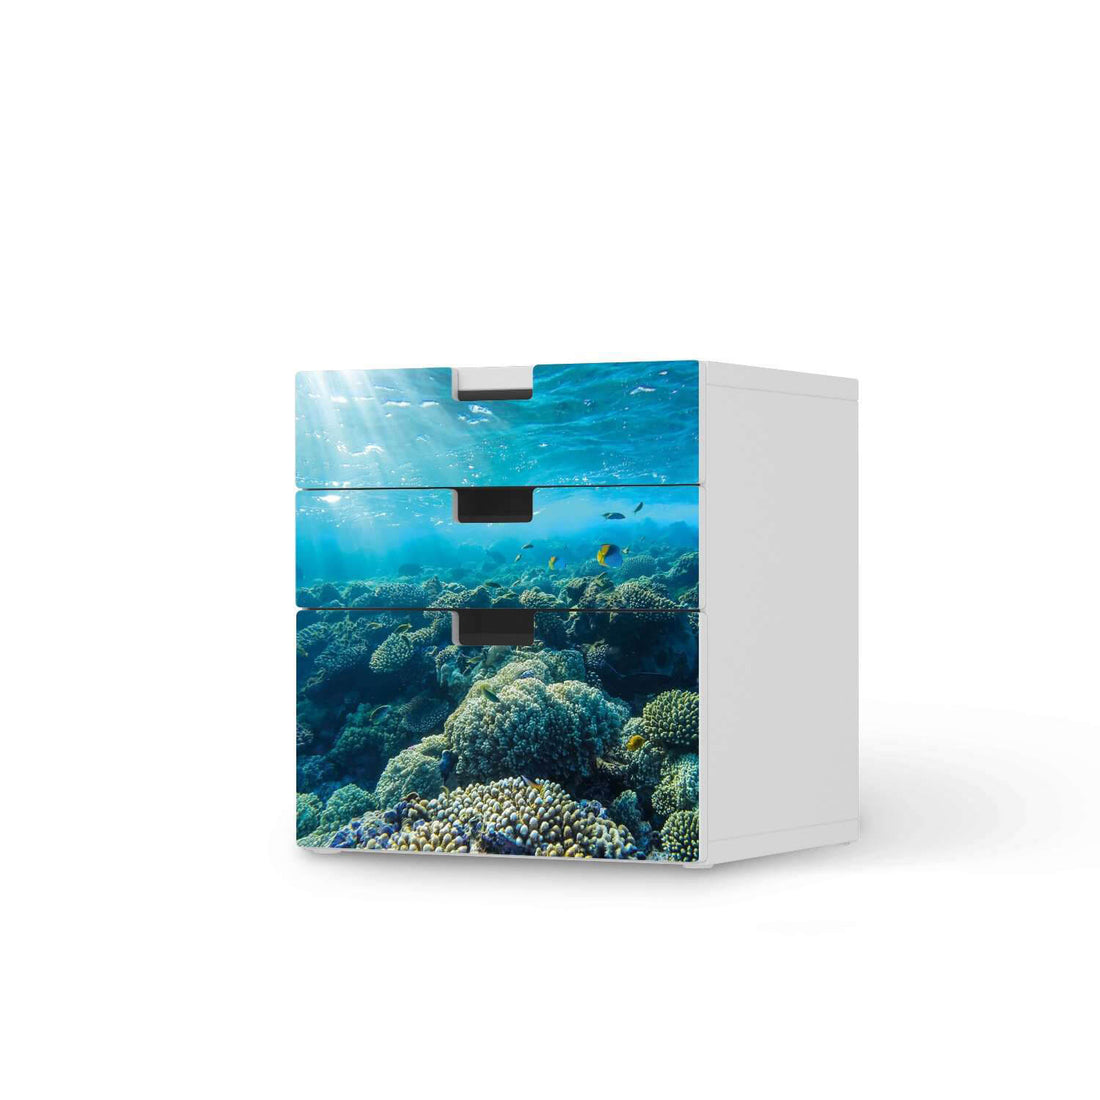 Folie für Möbel Underwater World - IKEA Stuva Kommode - 3 Schubladen (Kombination 1)  - weiss